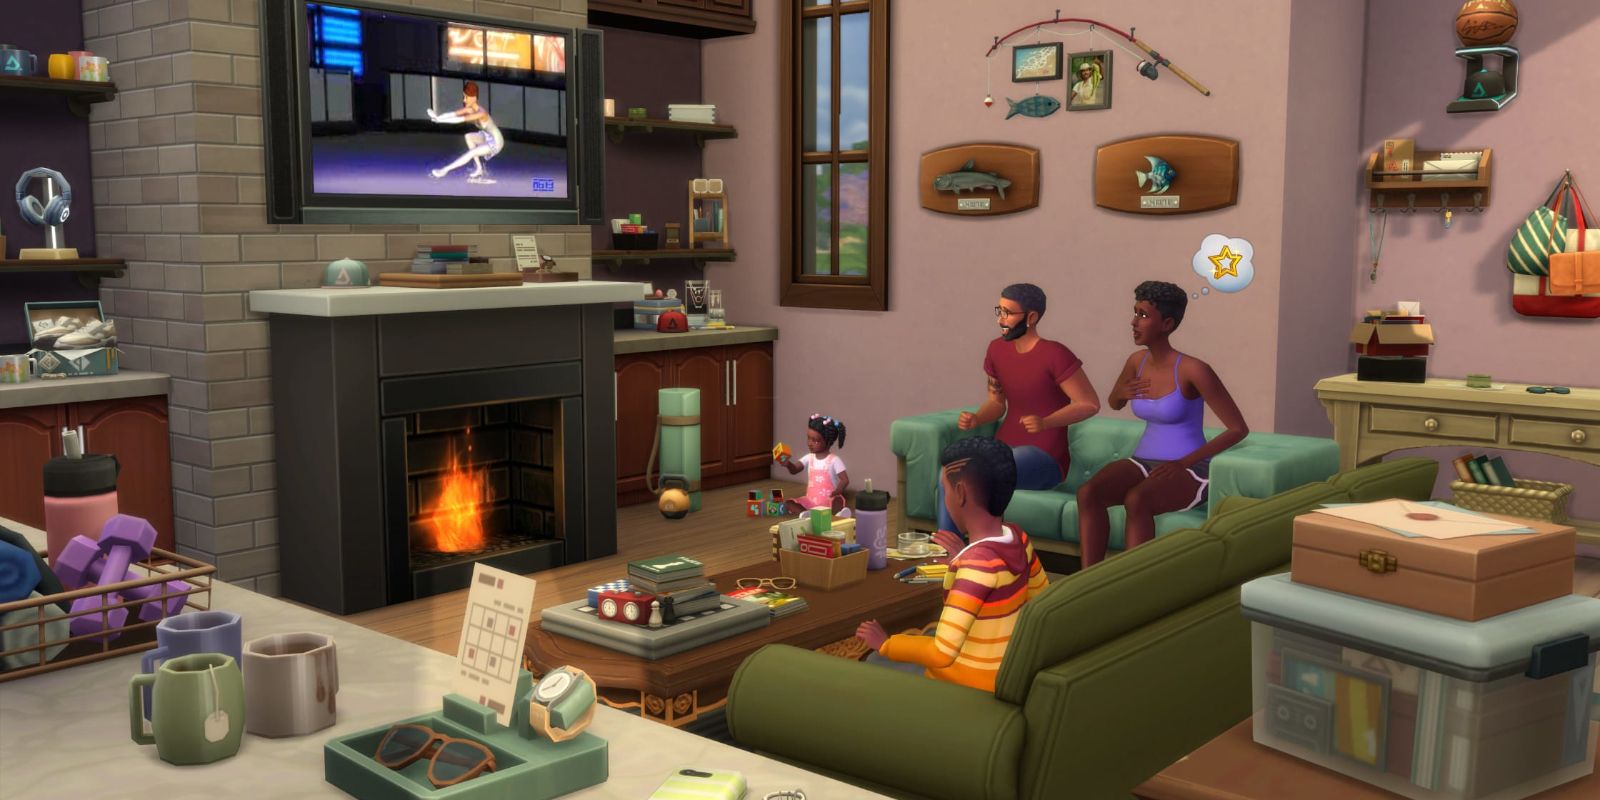 Uma imagem de uma família Sims passando um tempo juntos em uma sala de estar, com a decoração do kit Everyday Clutter do The Sims 4 espalhada.